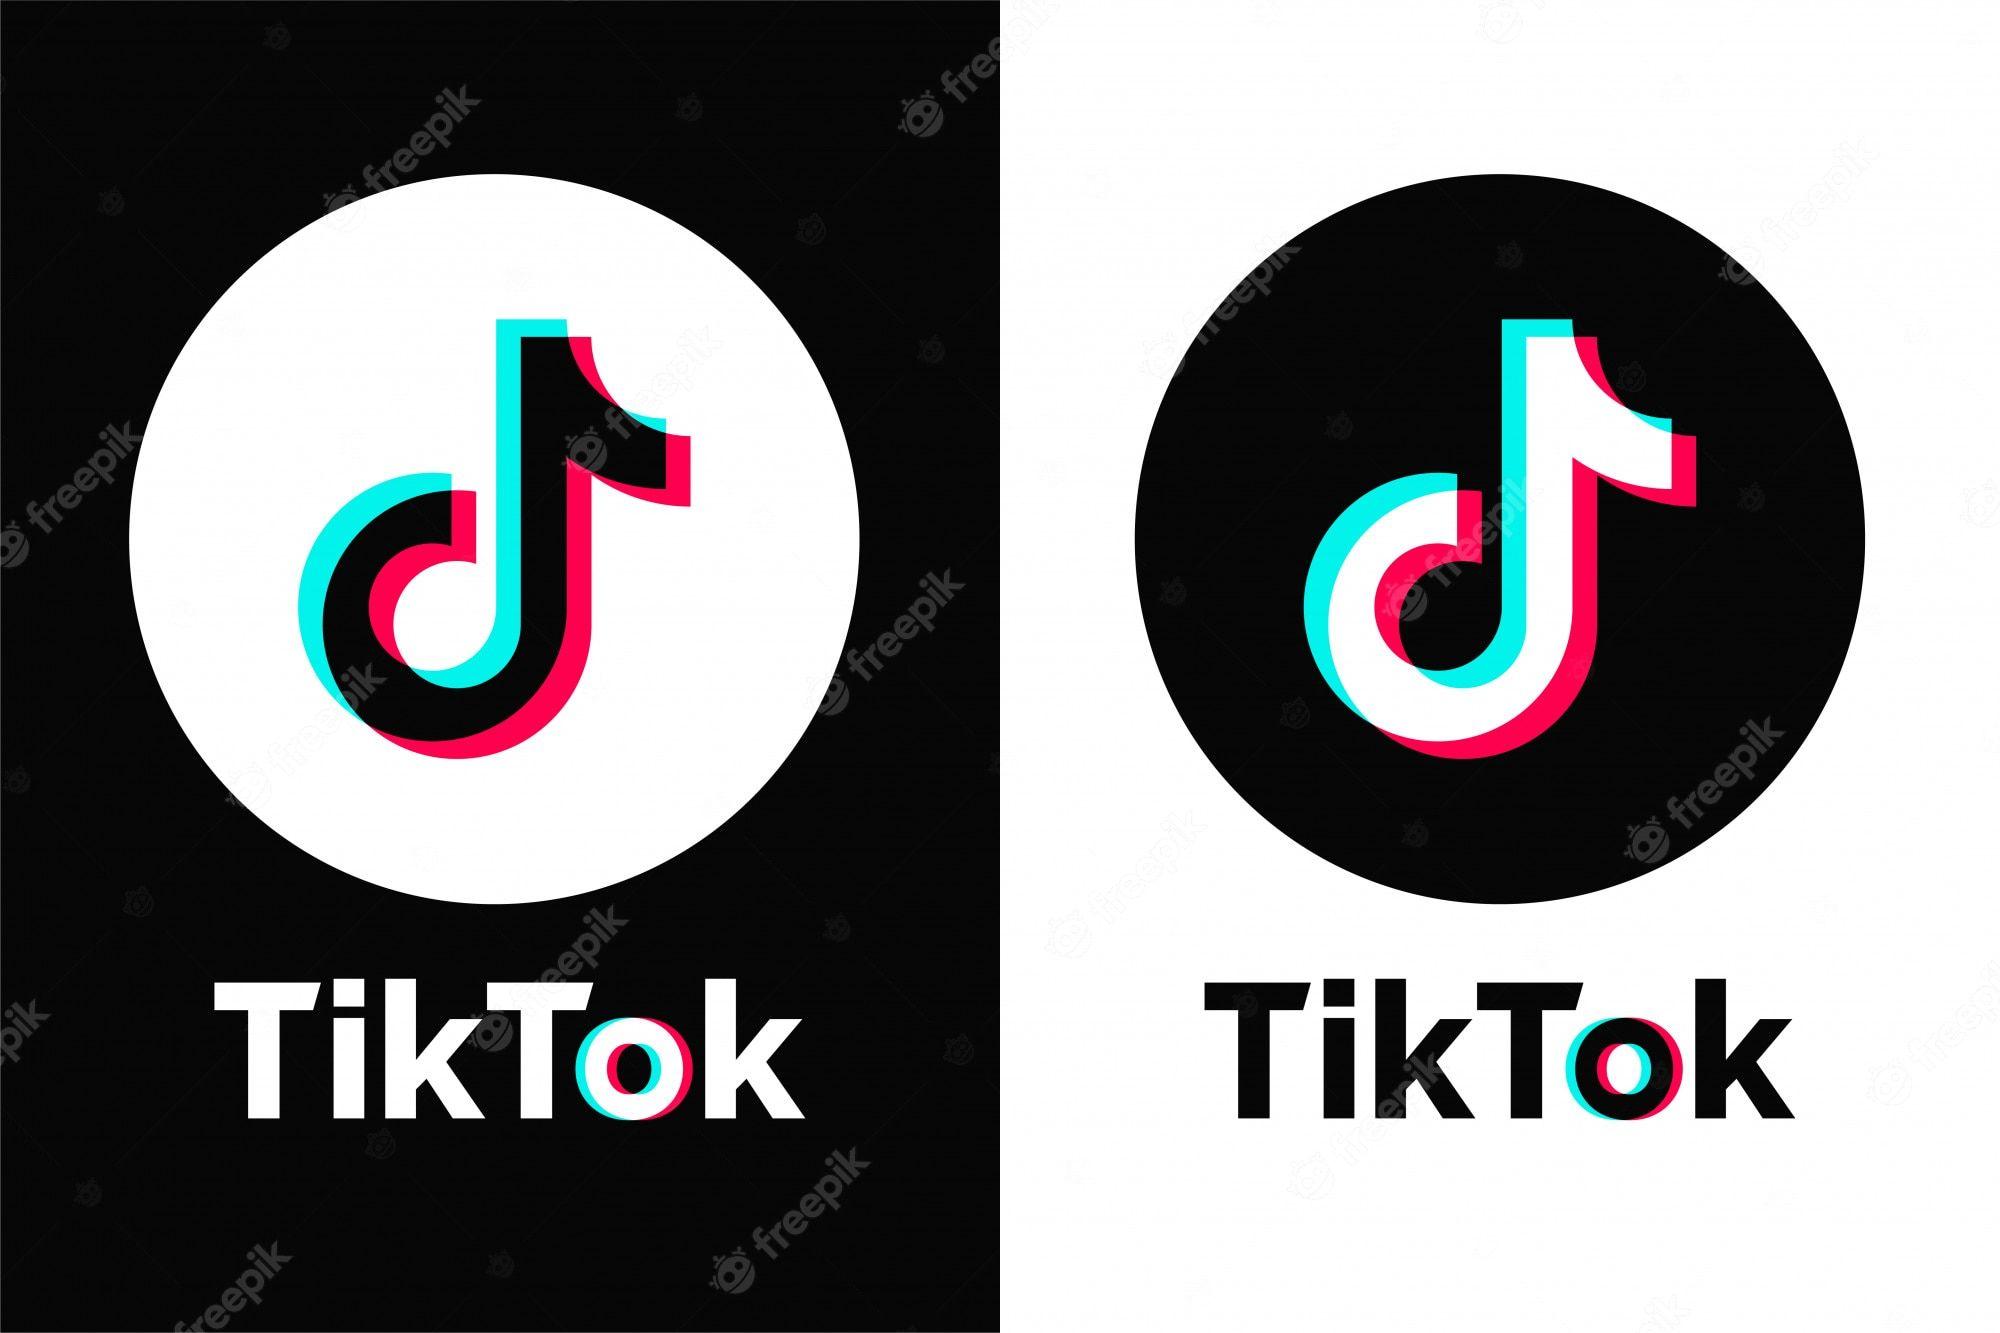 TikTok Logo - Tiktok Image